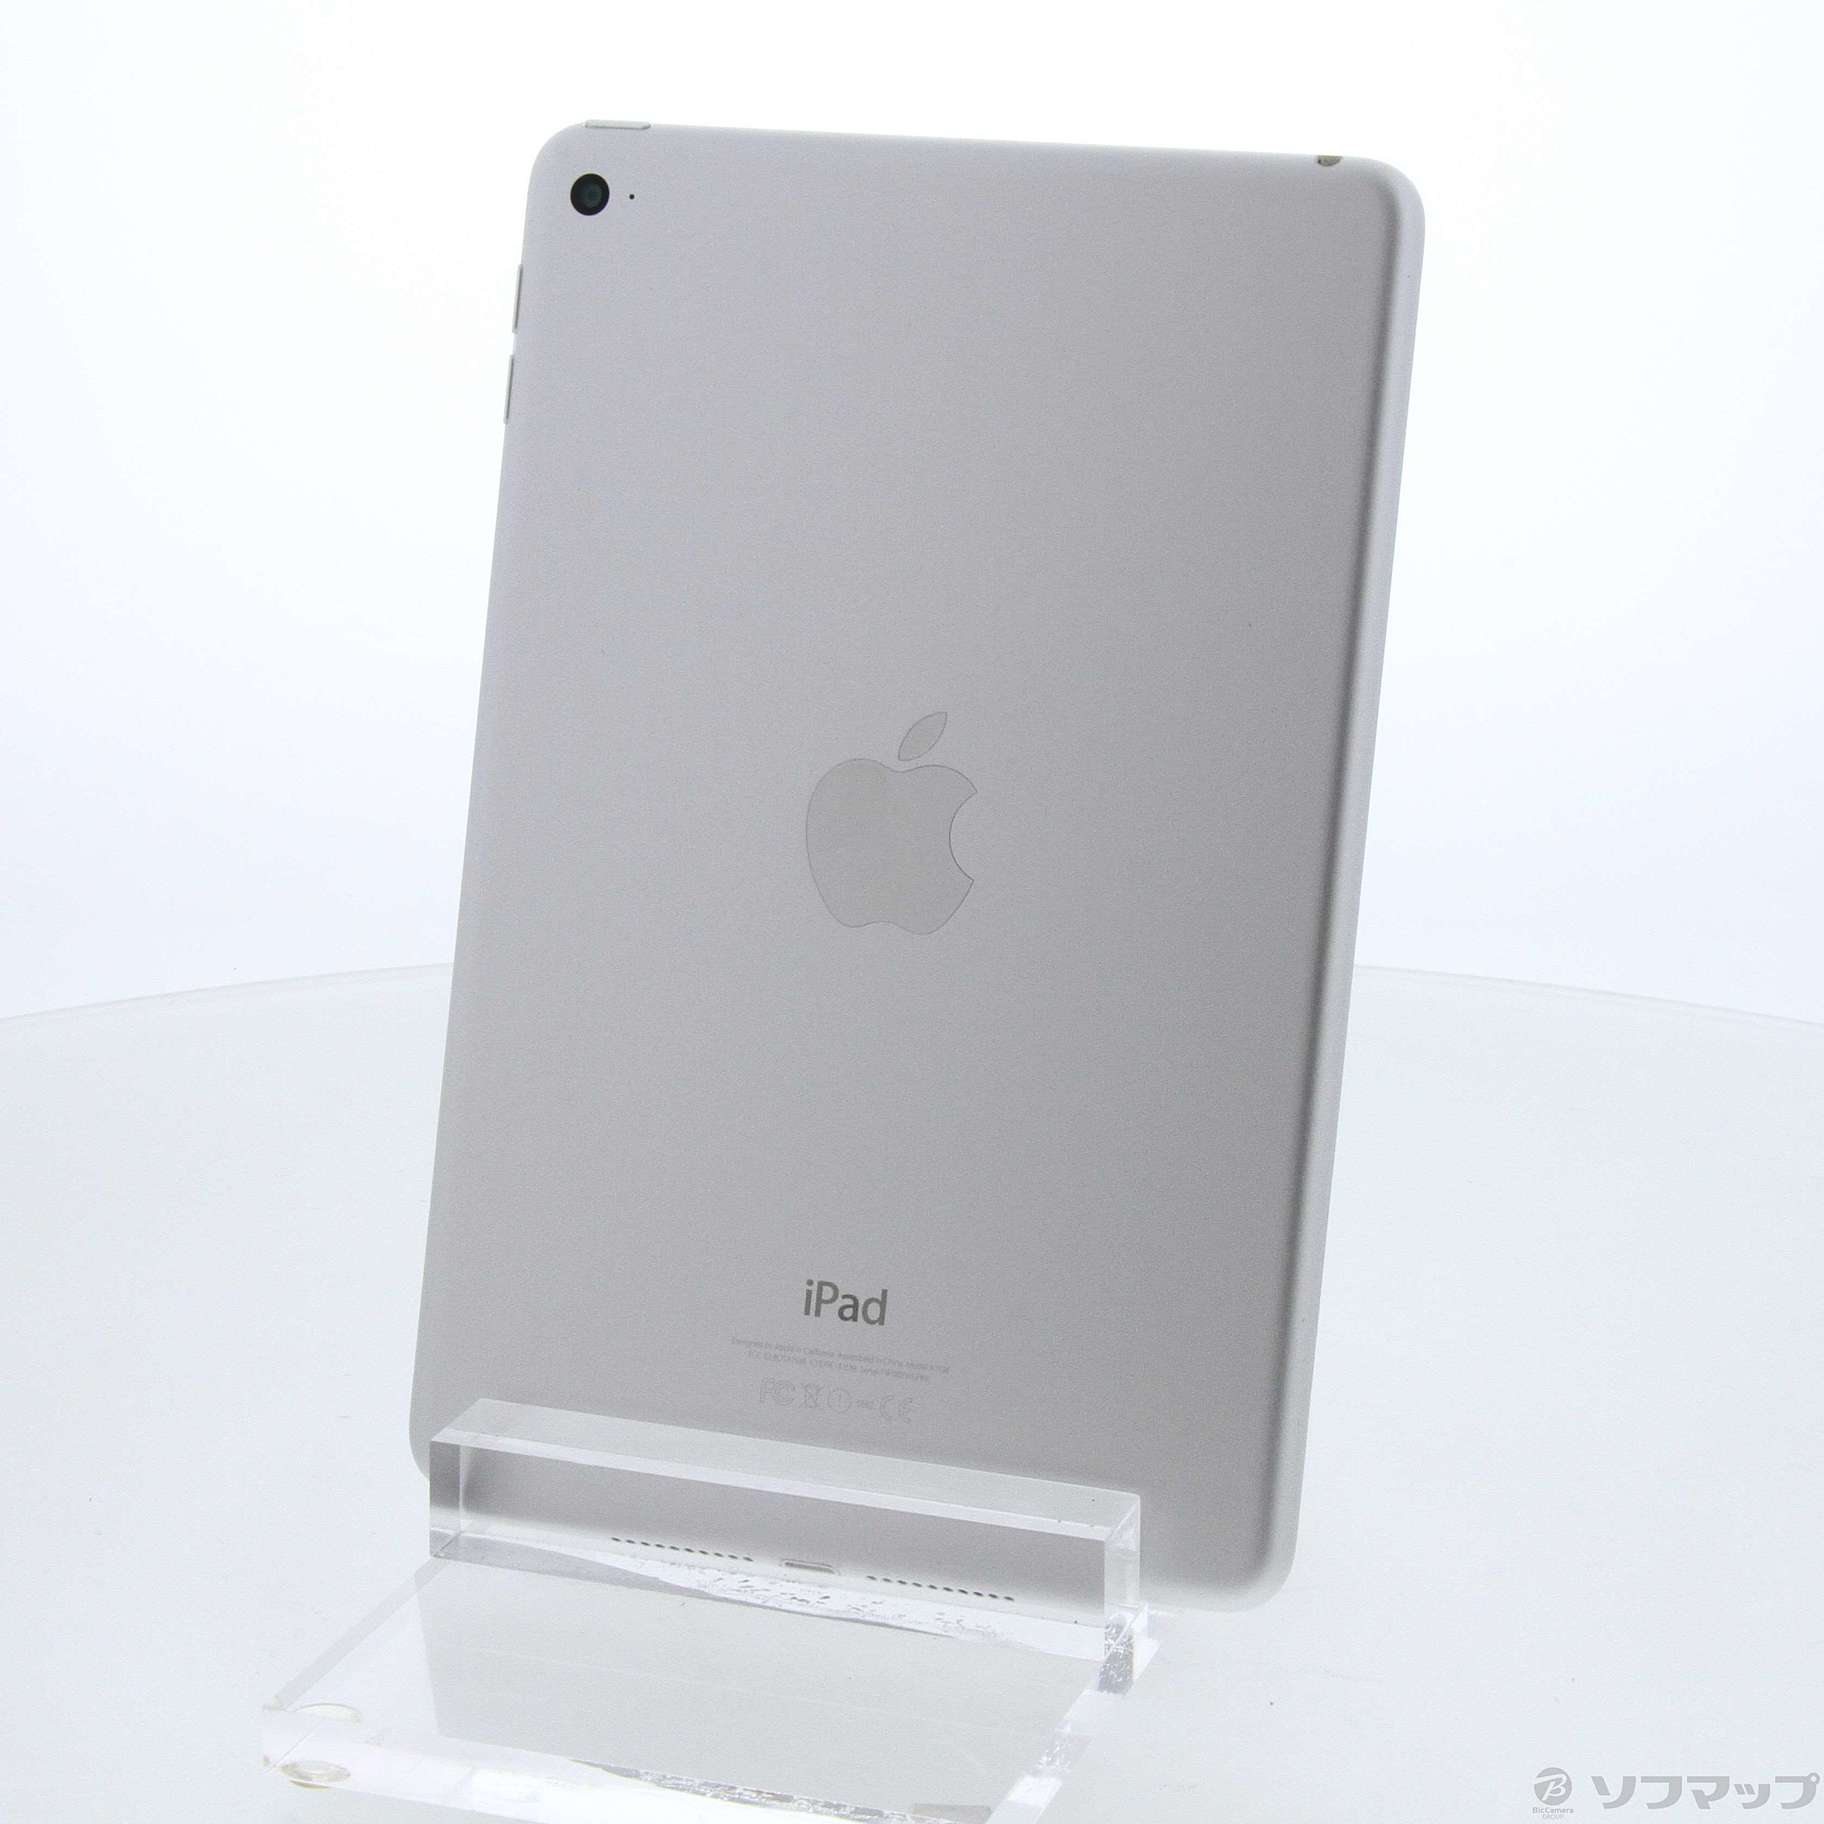 中古品(难有的)]iPad mini 4 128GB银MK9P2J/A Wi-Fi|no邮购是Sofmap